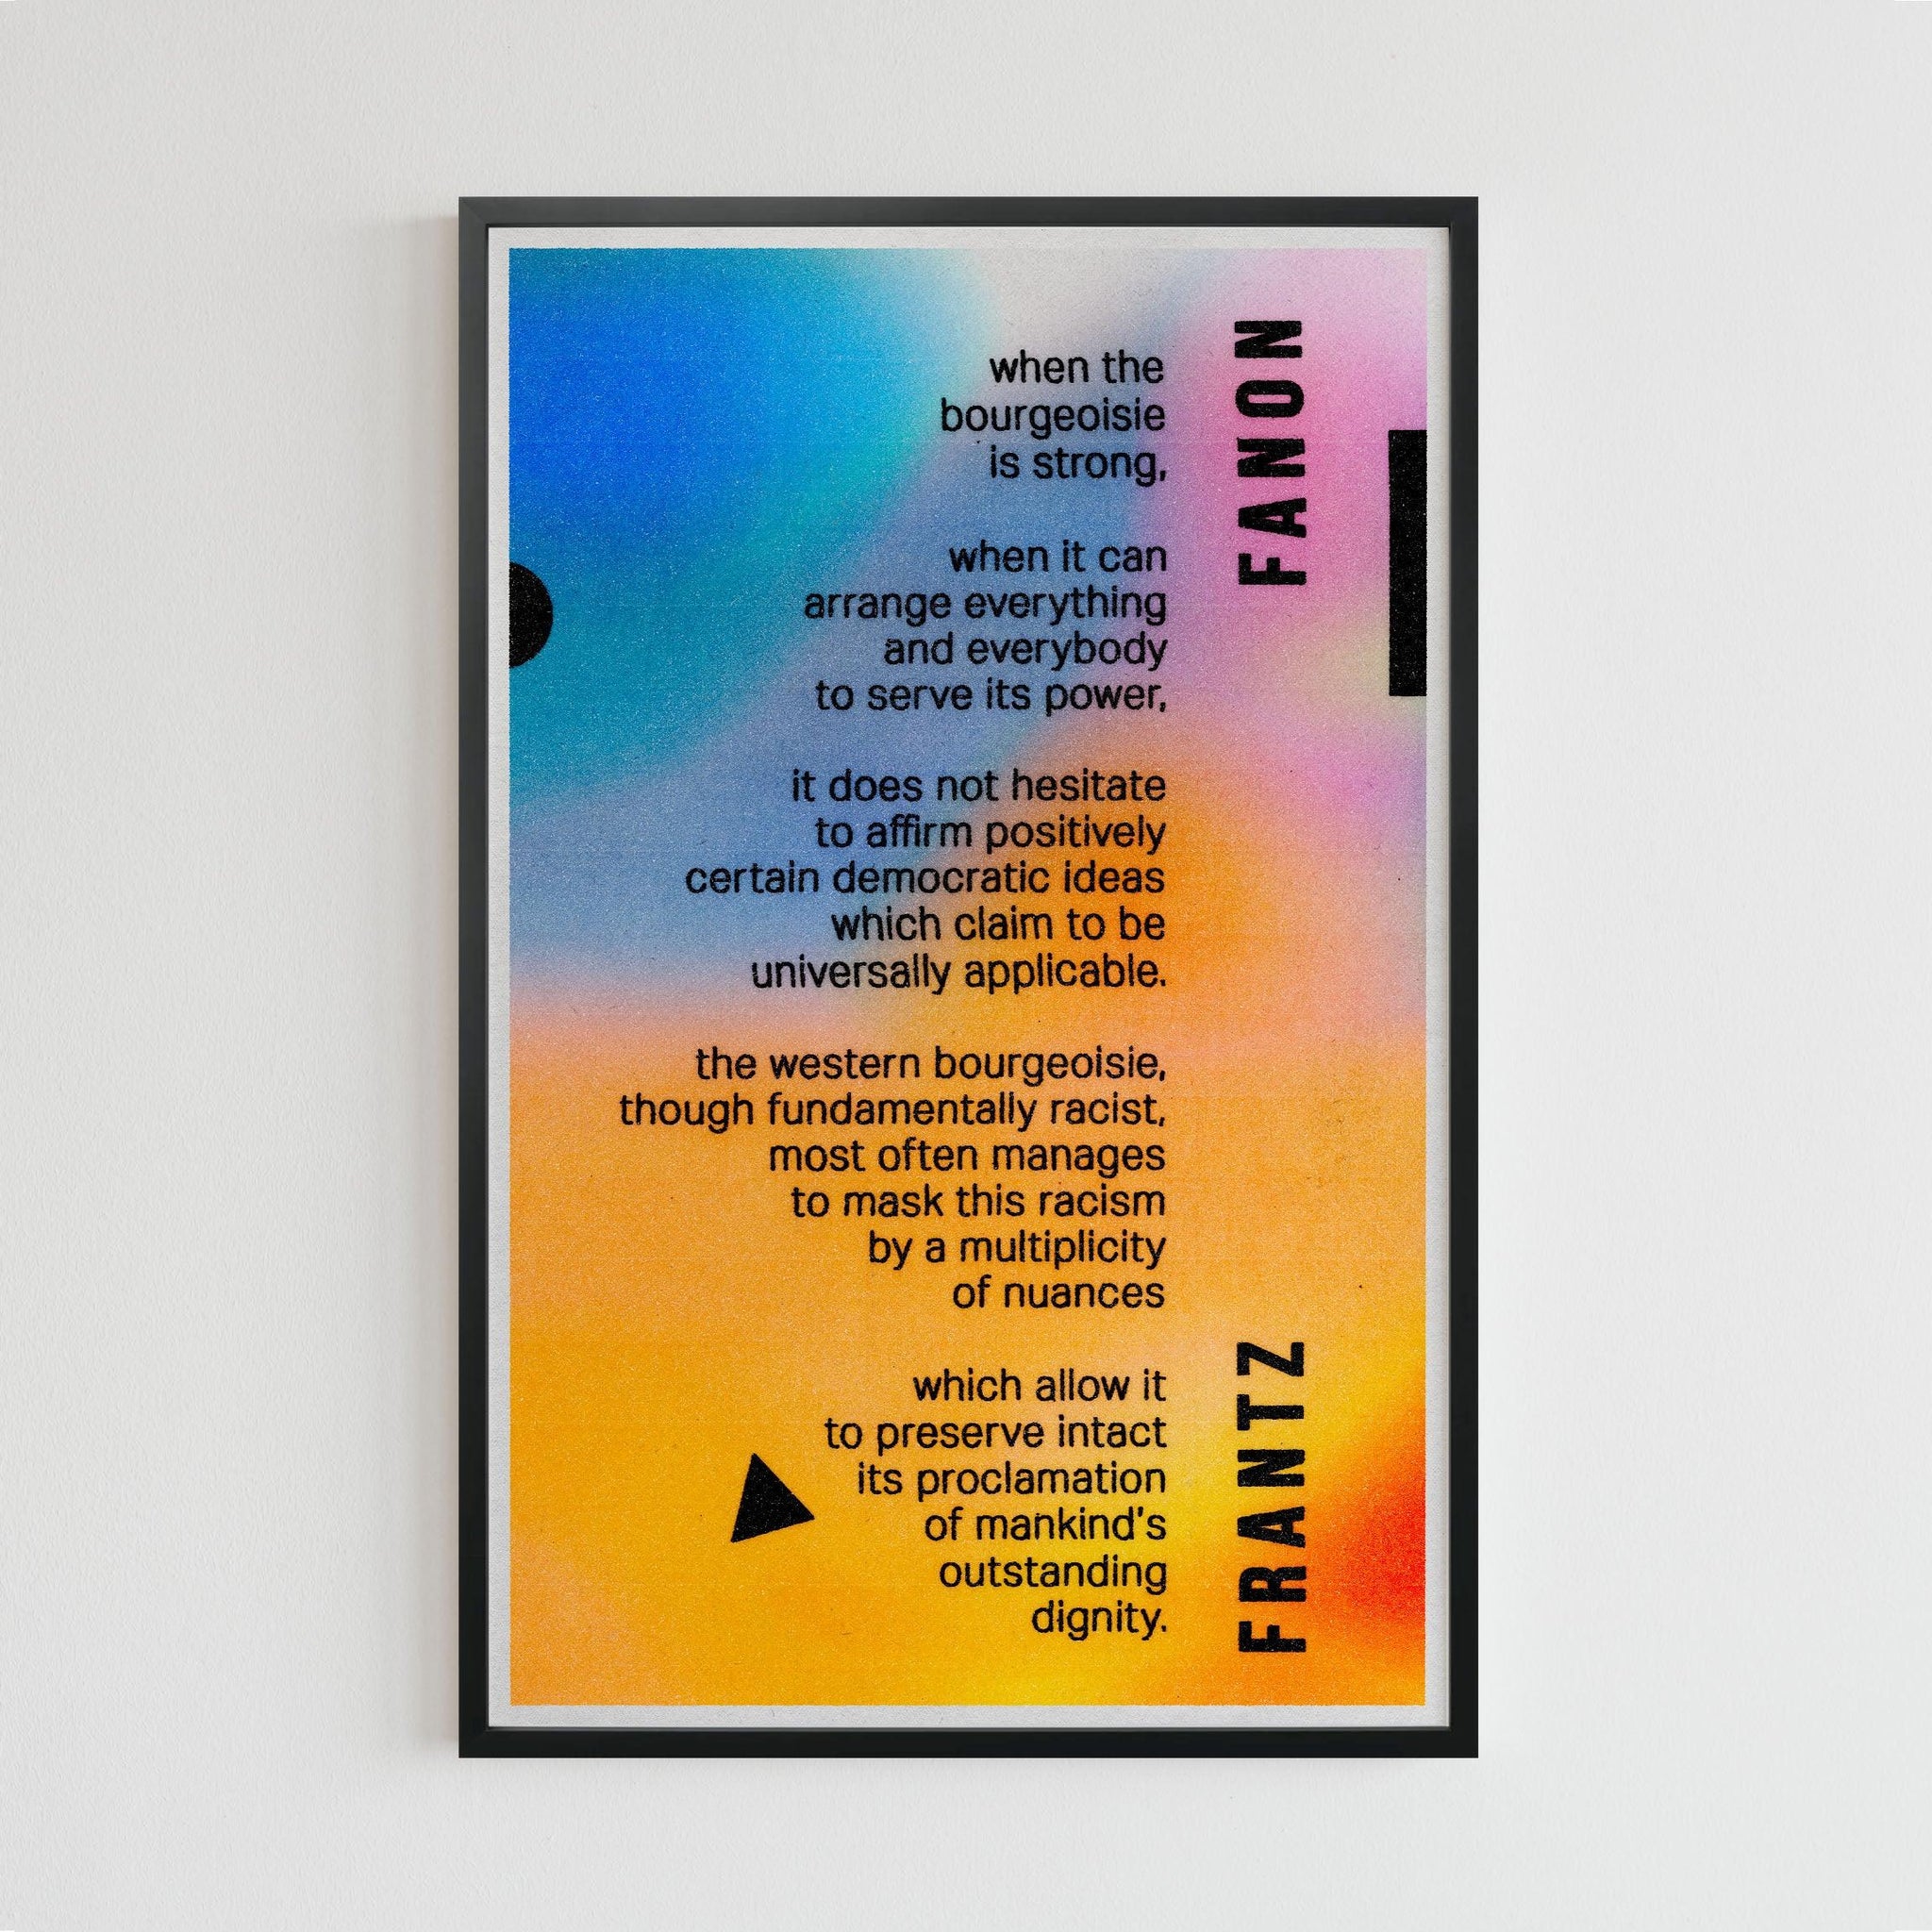 Frantz Fanon quote (11 x 17 Poster print) - Color Collective Press